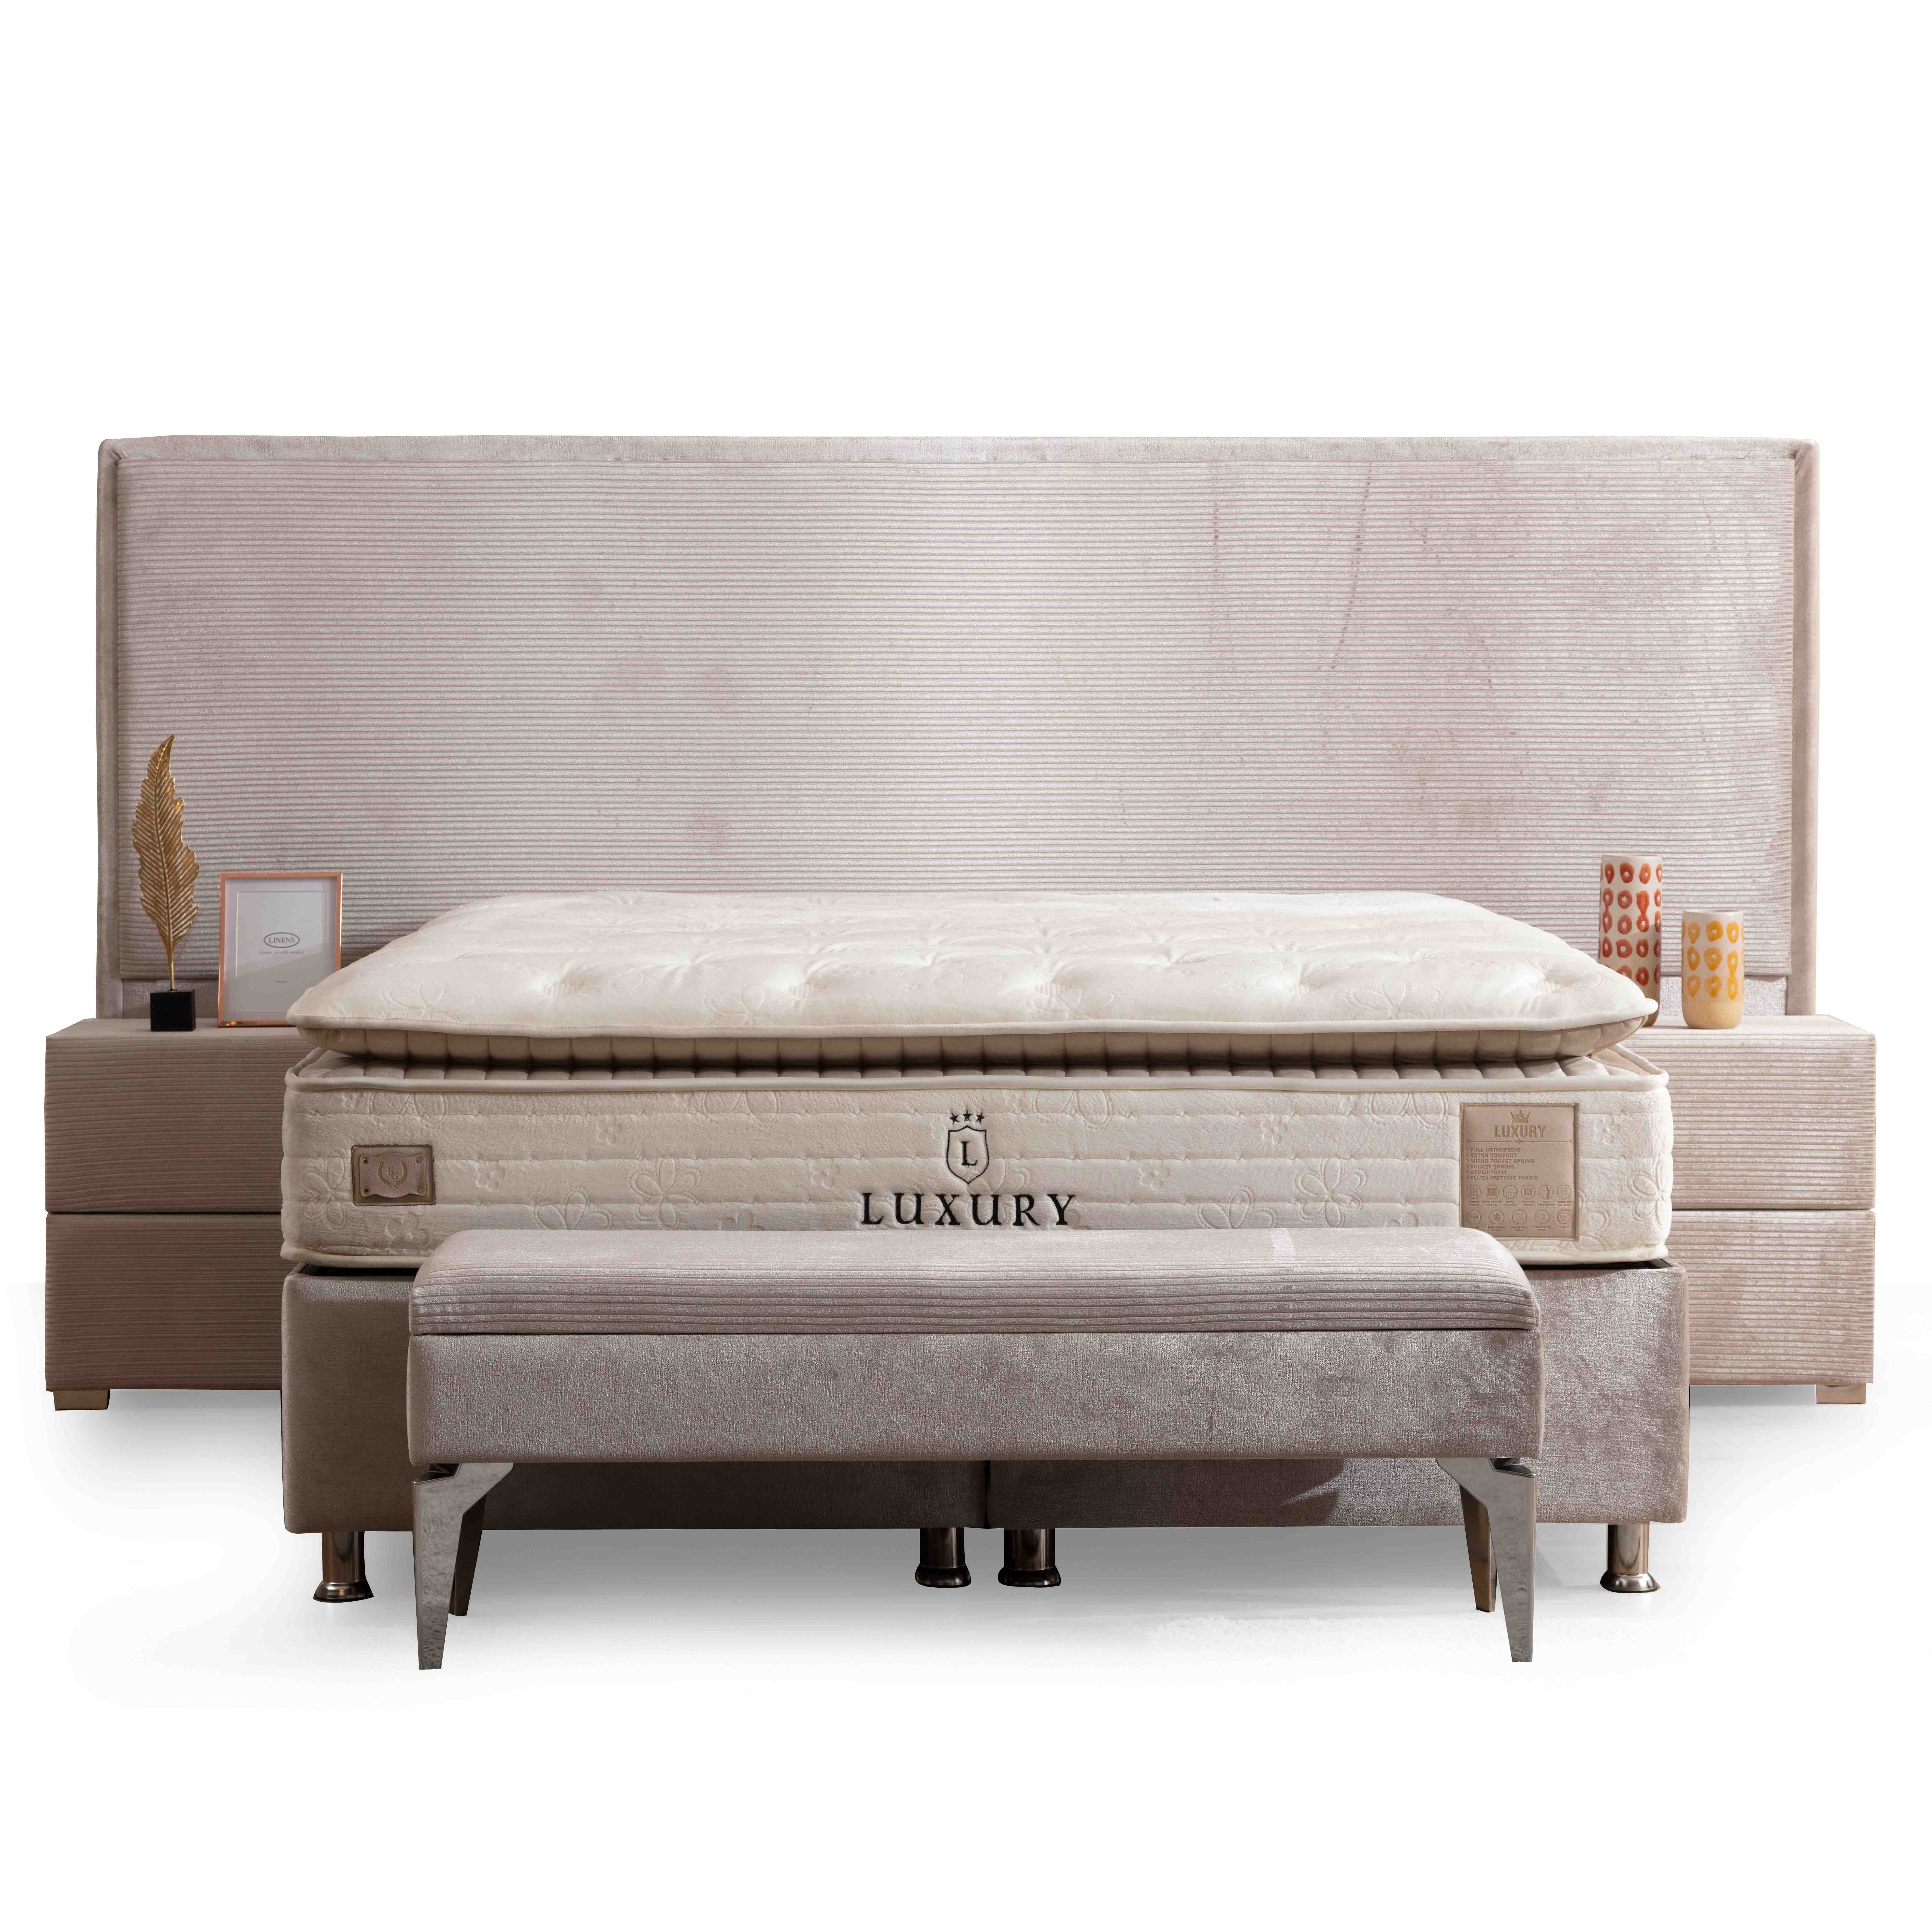 Havana Bed With Storage 140*190